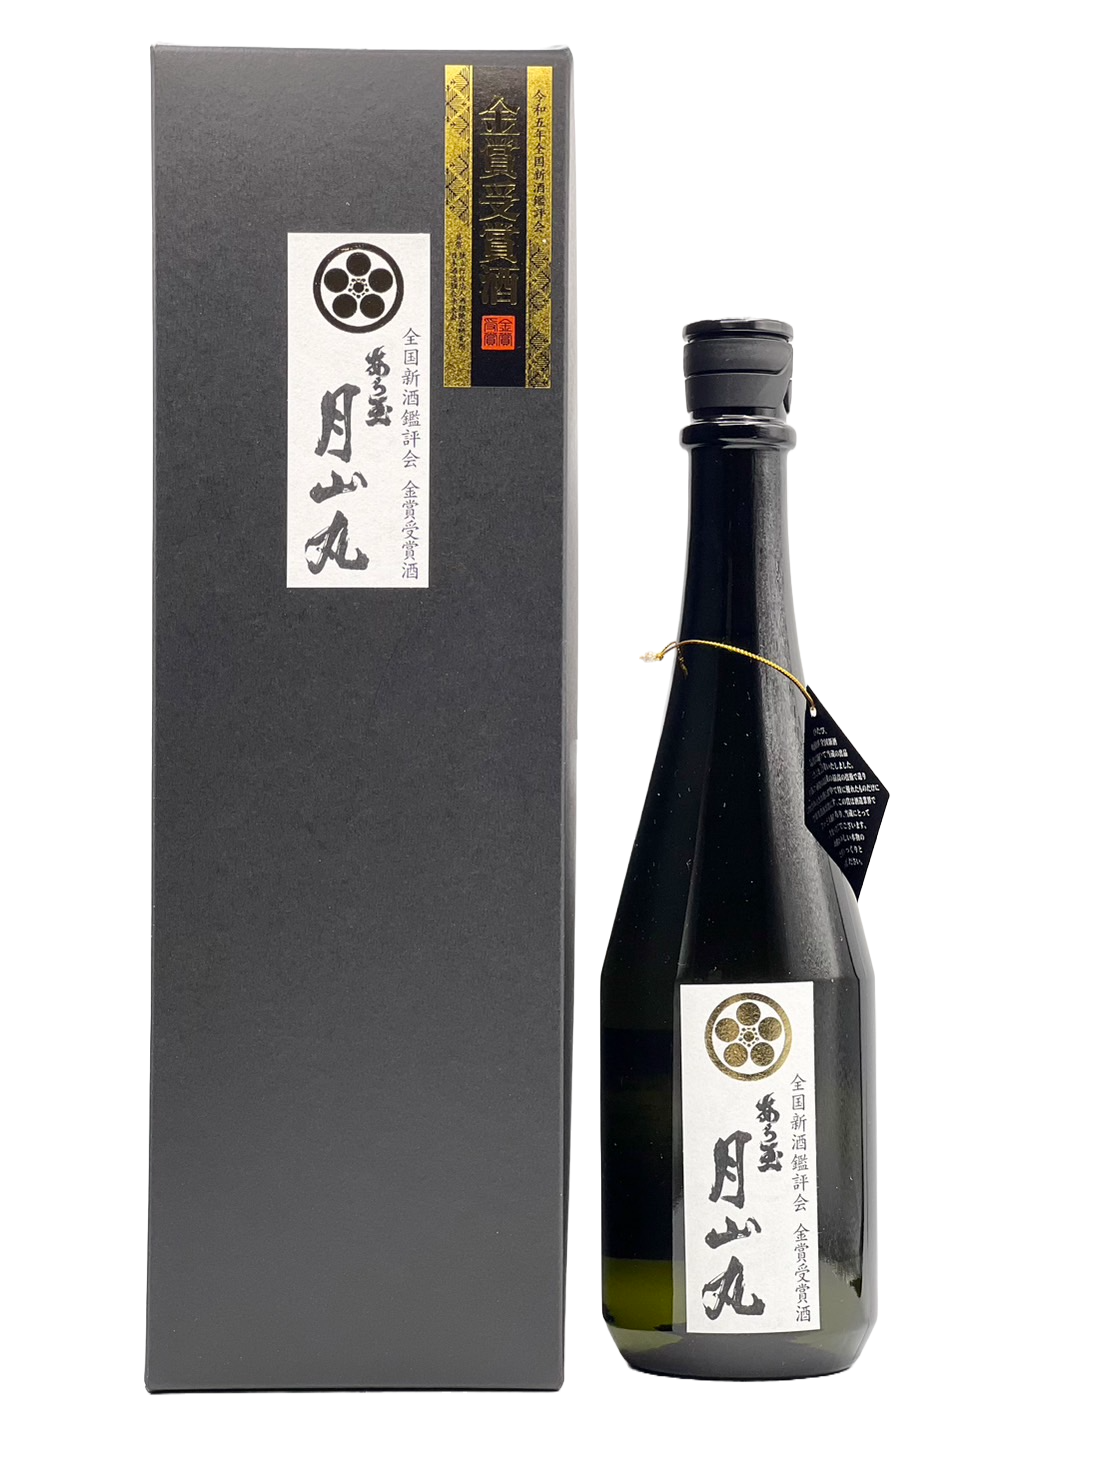 Aratama Daiginjo Unblended Sake Tsukiyama Maru [R5 Gold Award Winning Sake]